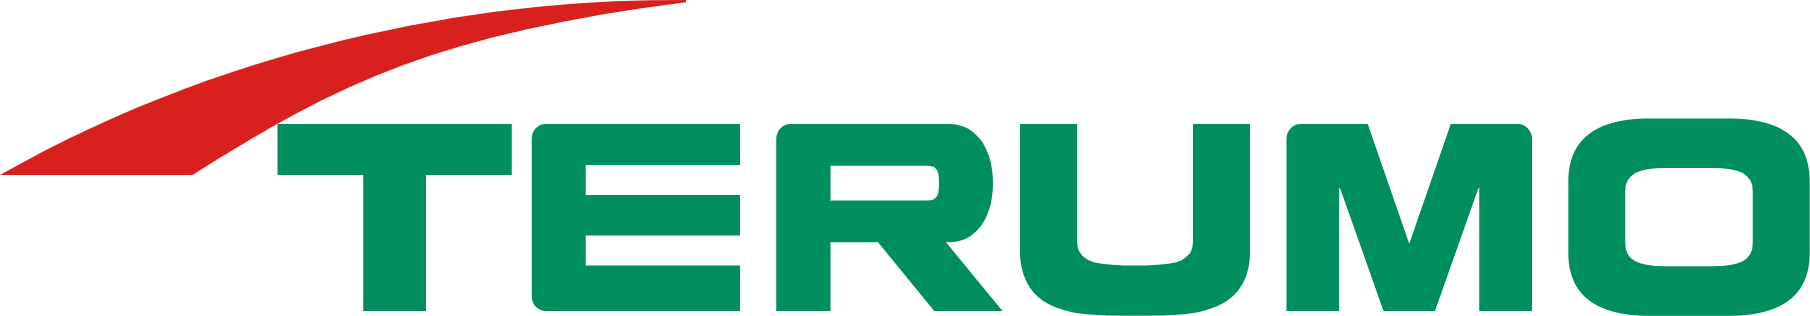 Terumo logo large (transparent PNG)